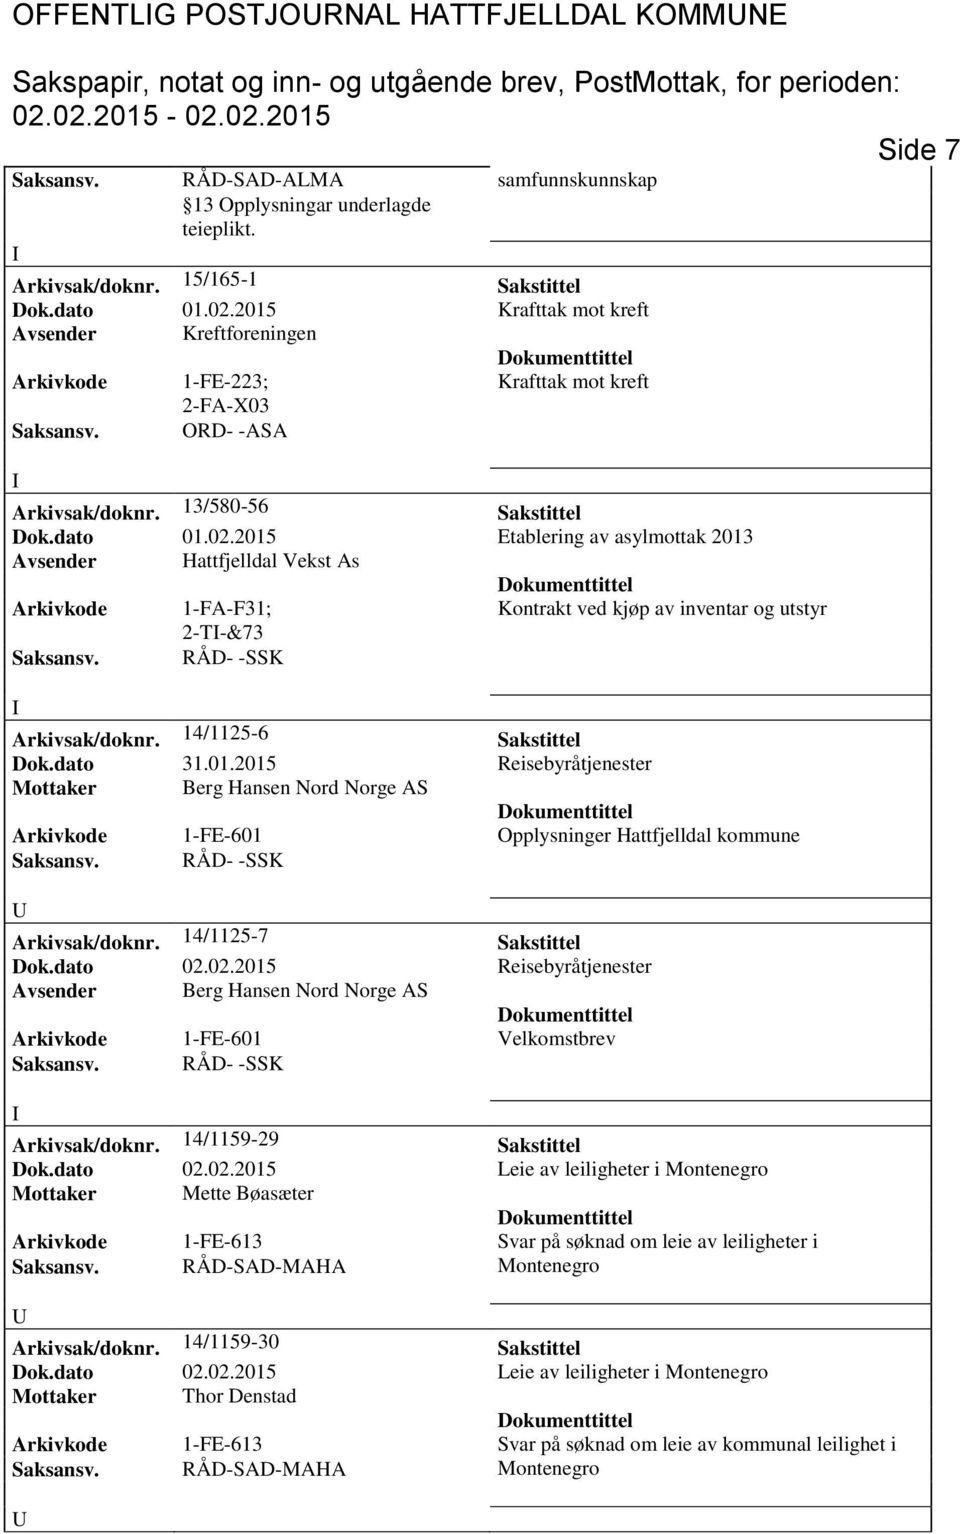 2015 Etablering av asylmottak 2013 Avsender Hattfjelldal Vekst As Arkivkode 1-FA-F31; Kontrakt ved kjøp av inventar og utstyr 2-T-&73 aksansv. RÅD- -K Arkivsak/doknr. 14/1125-6 akstittel Dok.dato 31.